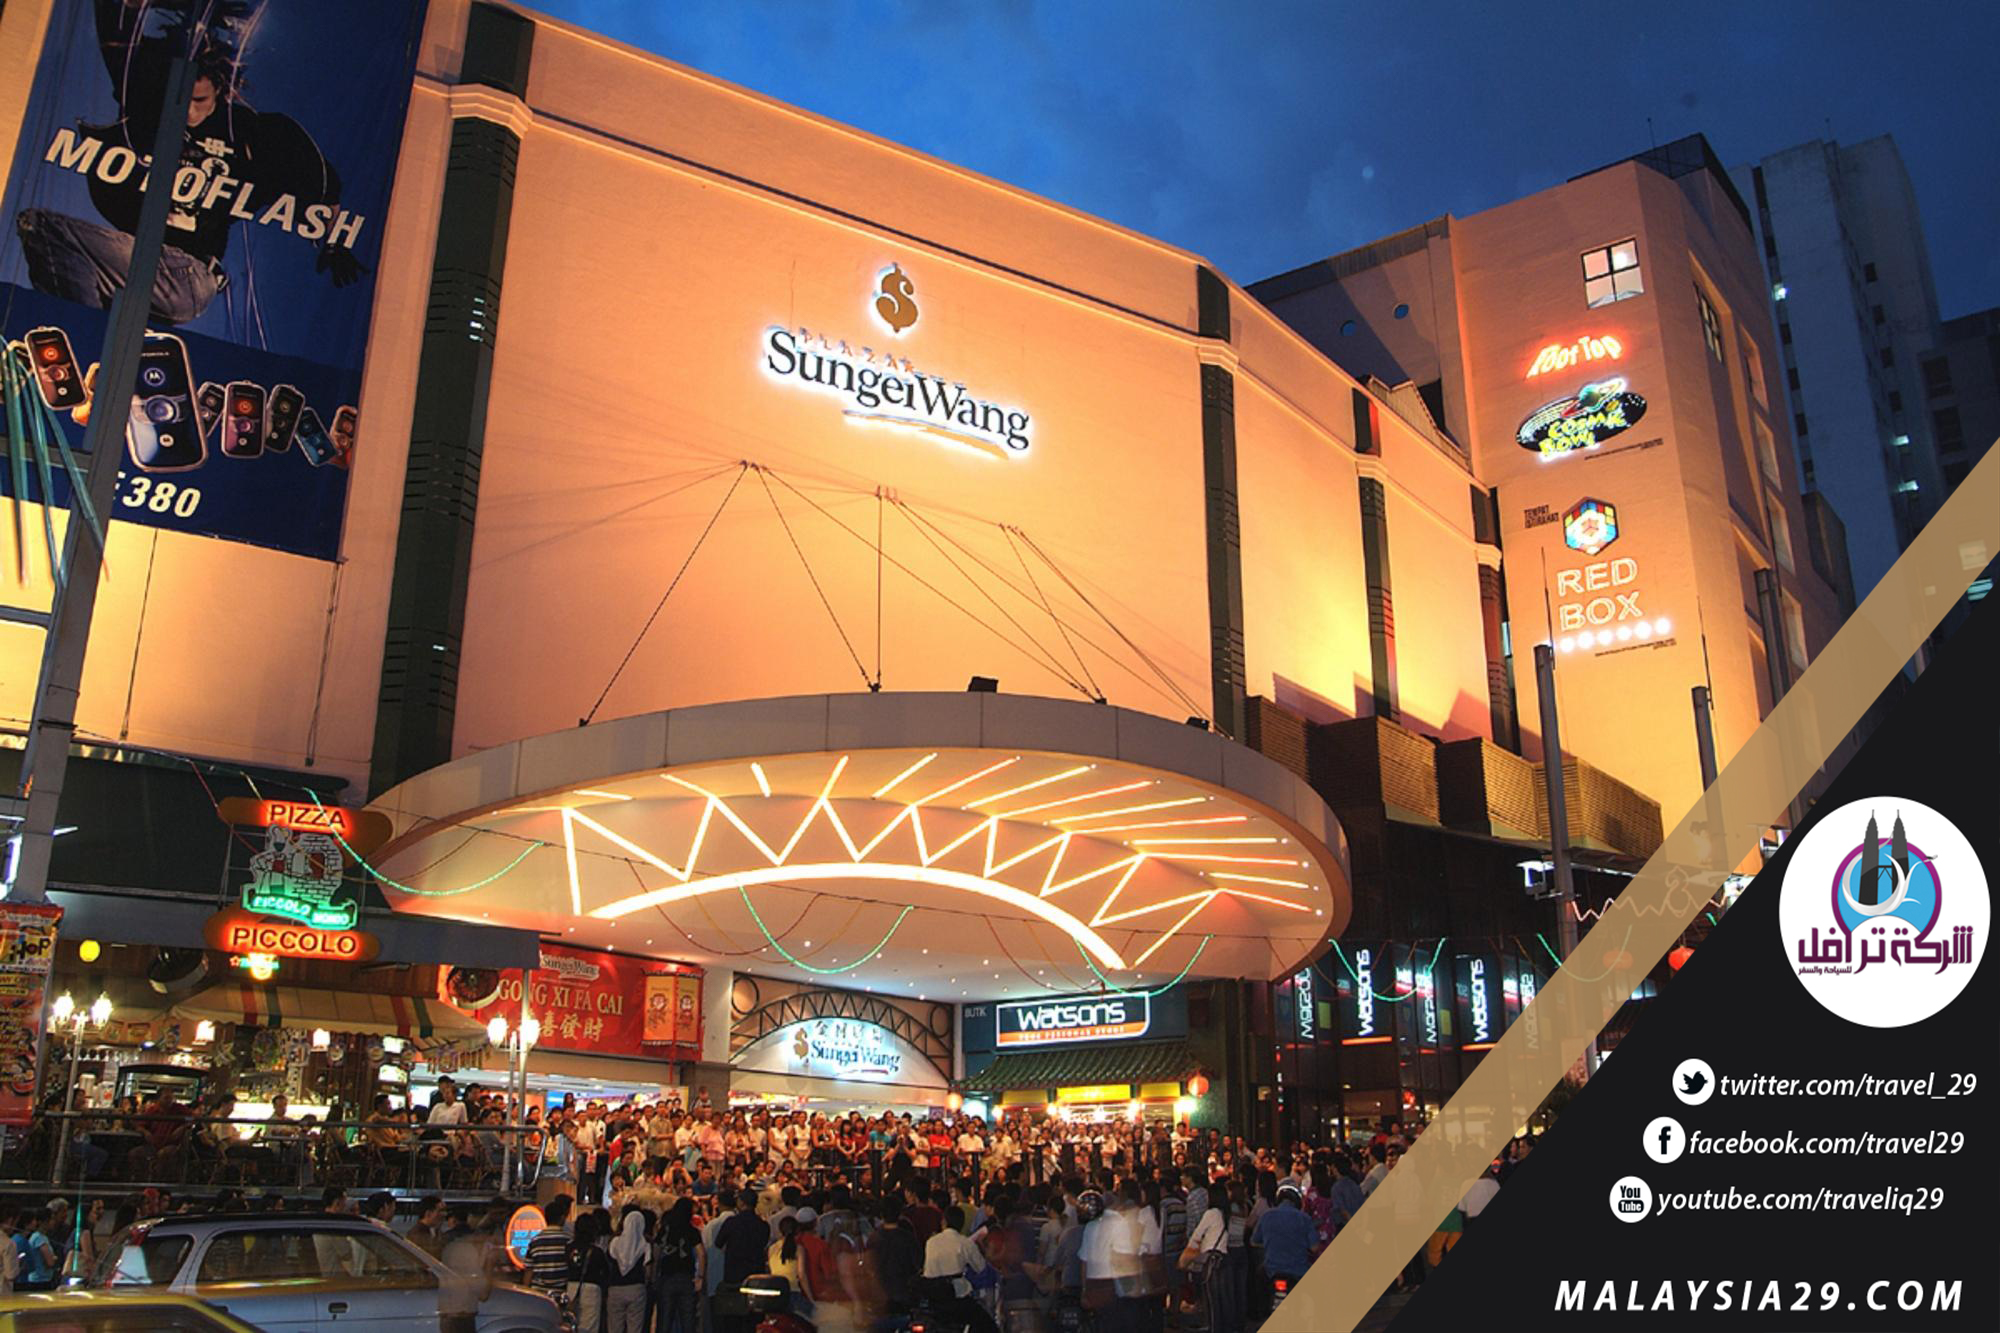 افضل 10 اماكن تسوق في كوالالمبور ماليزيا